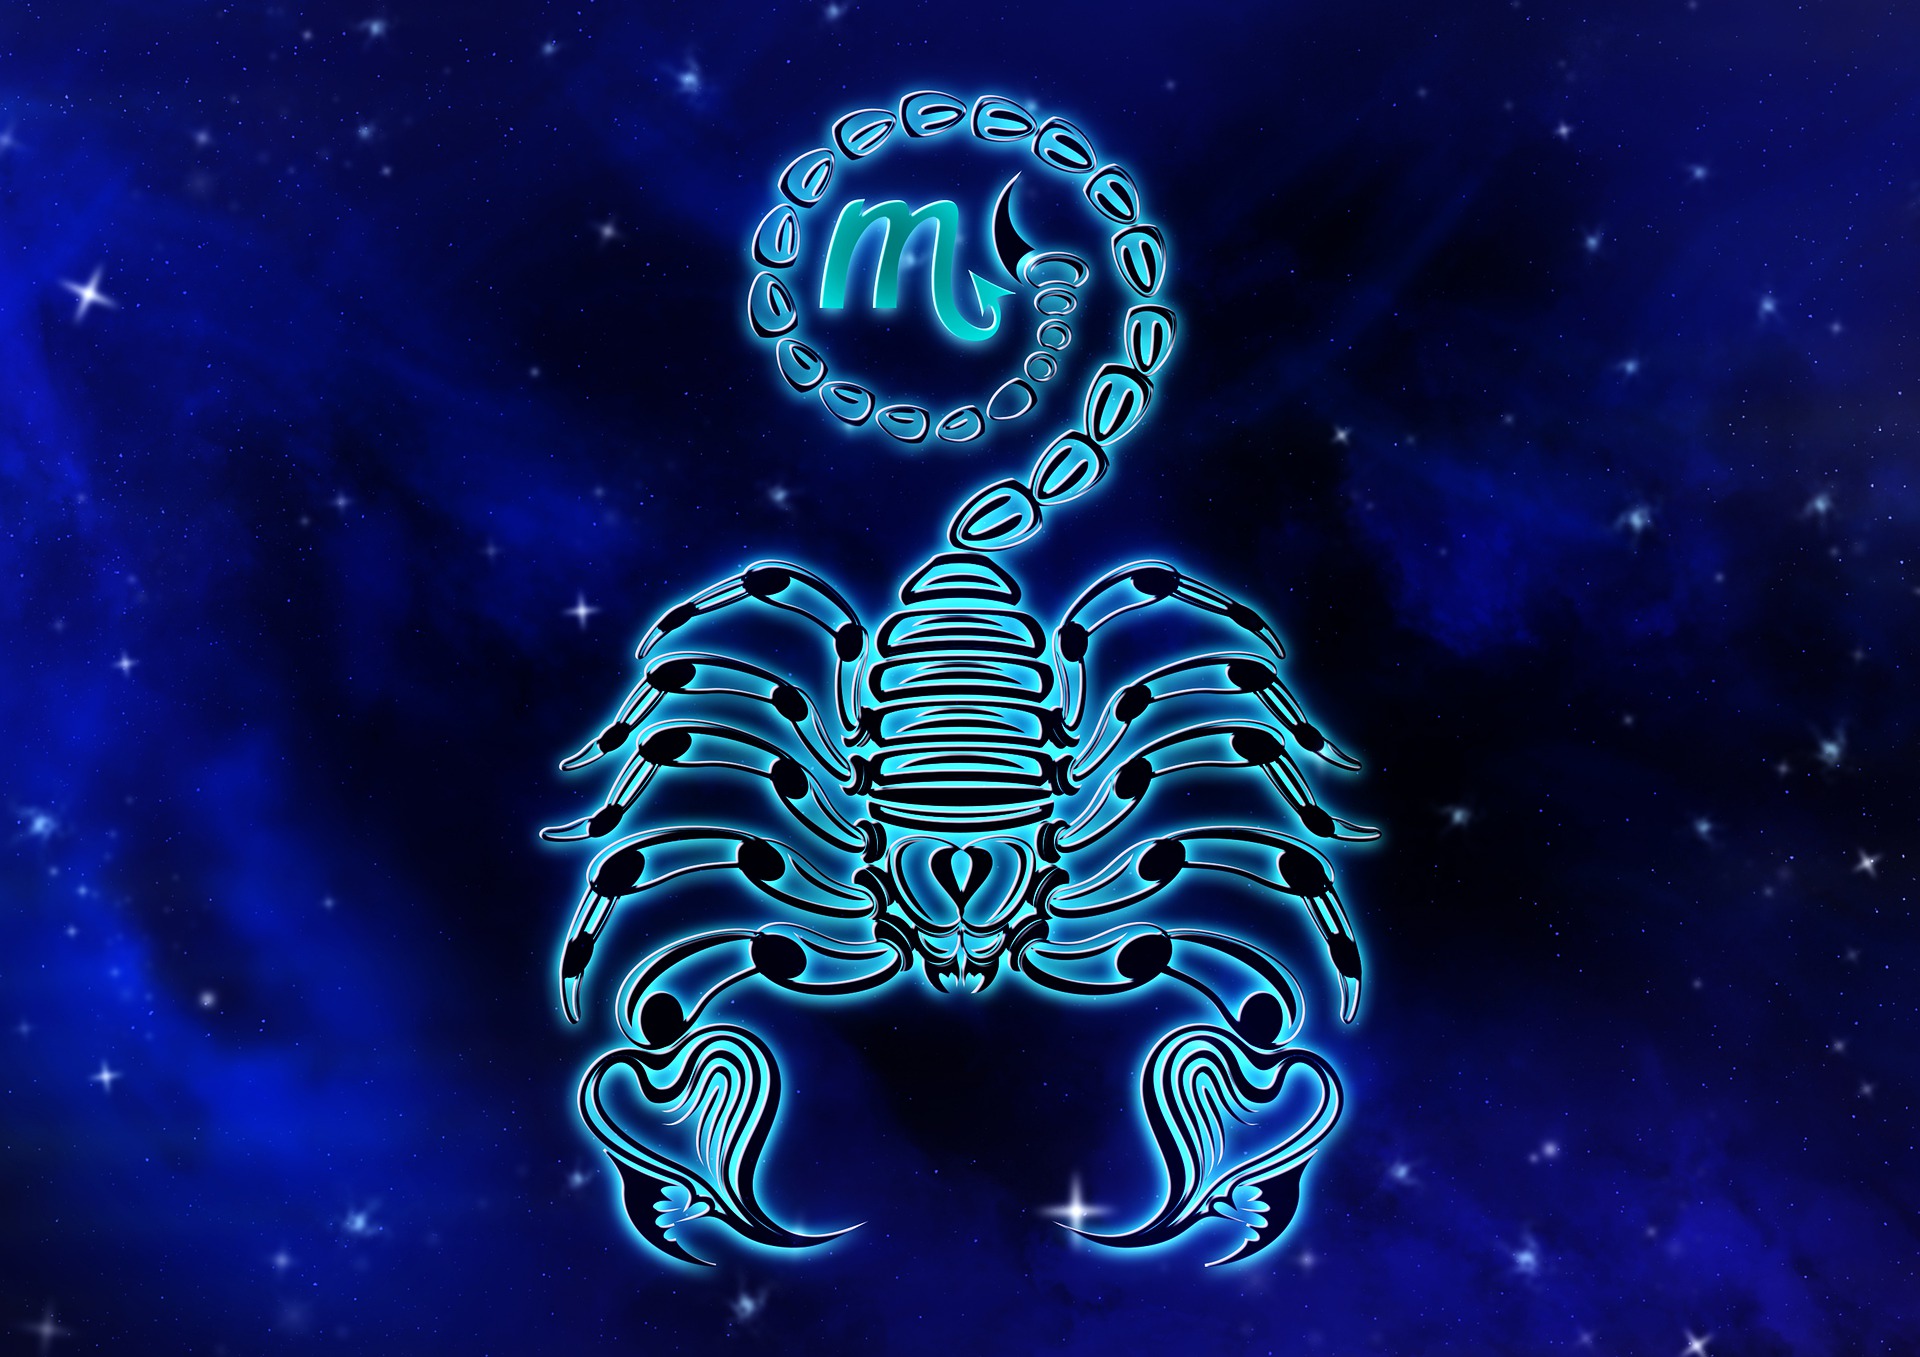 【十二星座神話故事】天蠍座－守護神冥王哈迪斯